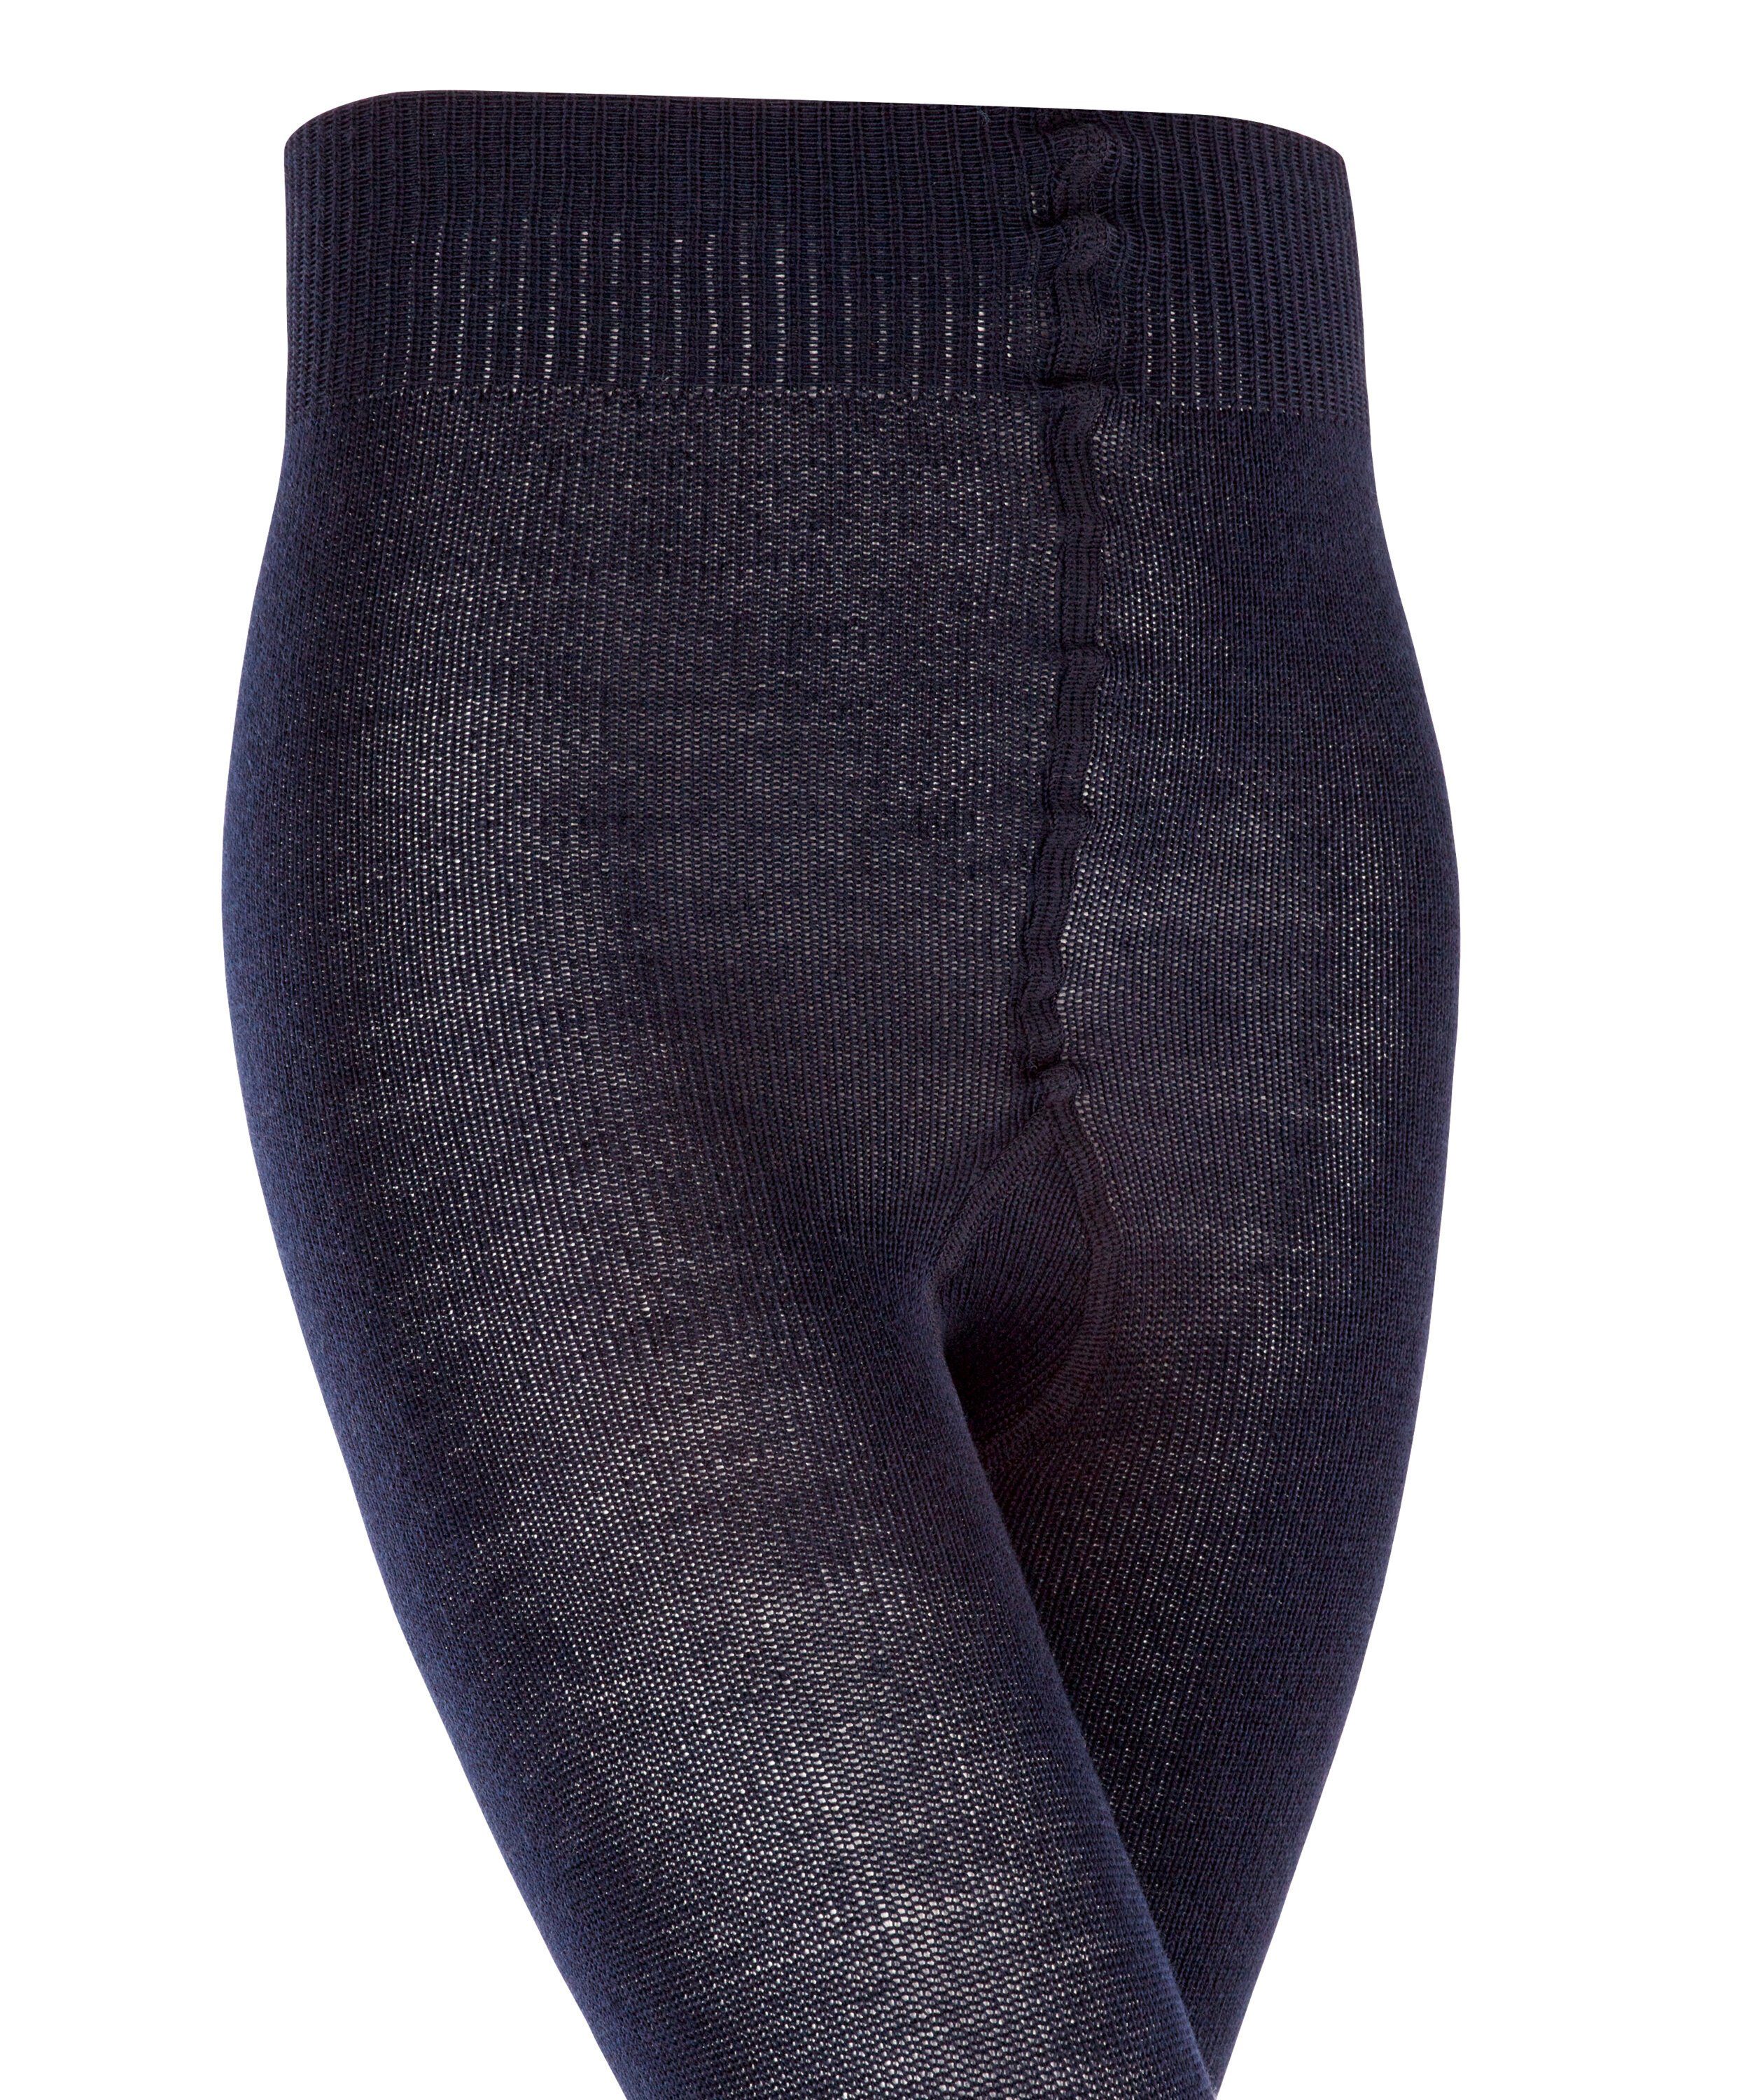 darkmarine Wool FALKE (6170) Strickstrumpfhose Comfort St) verstärkten Belastungszonen (1 mit